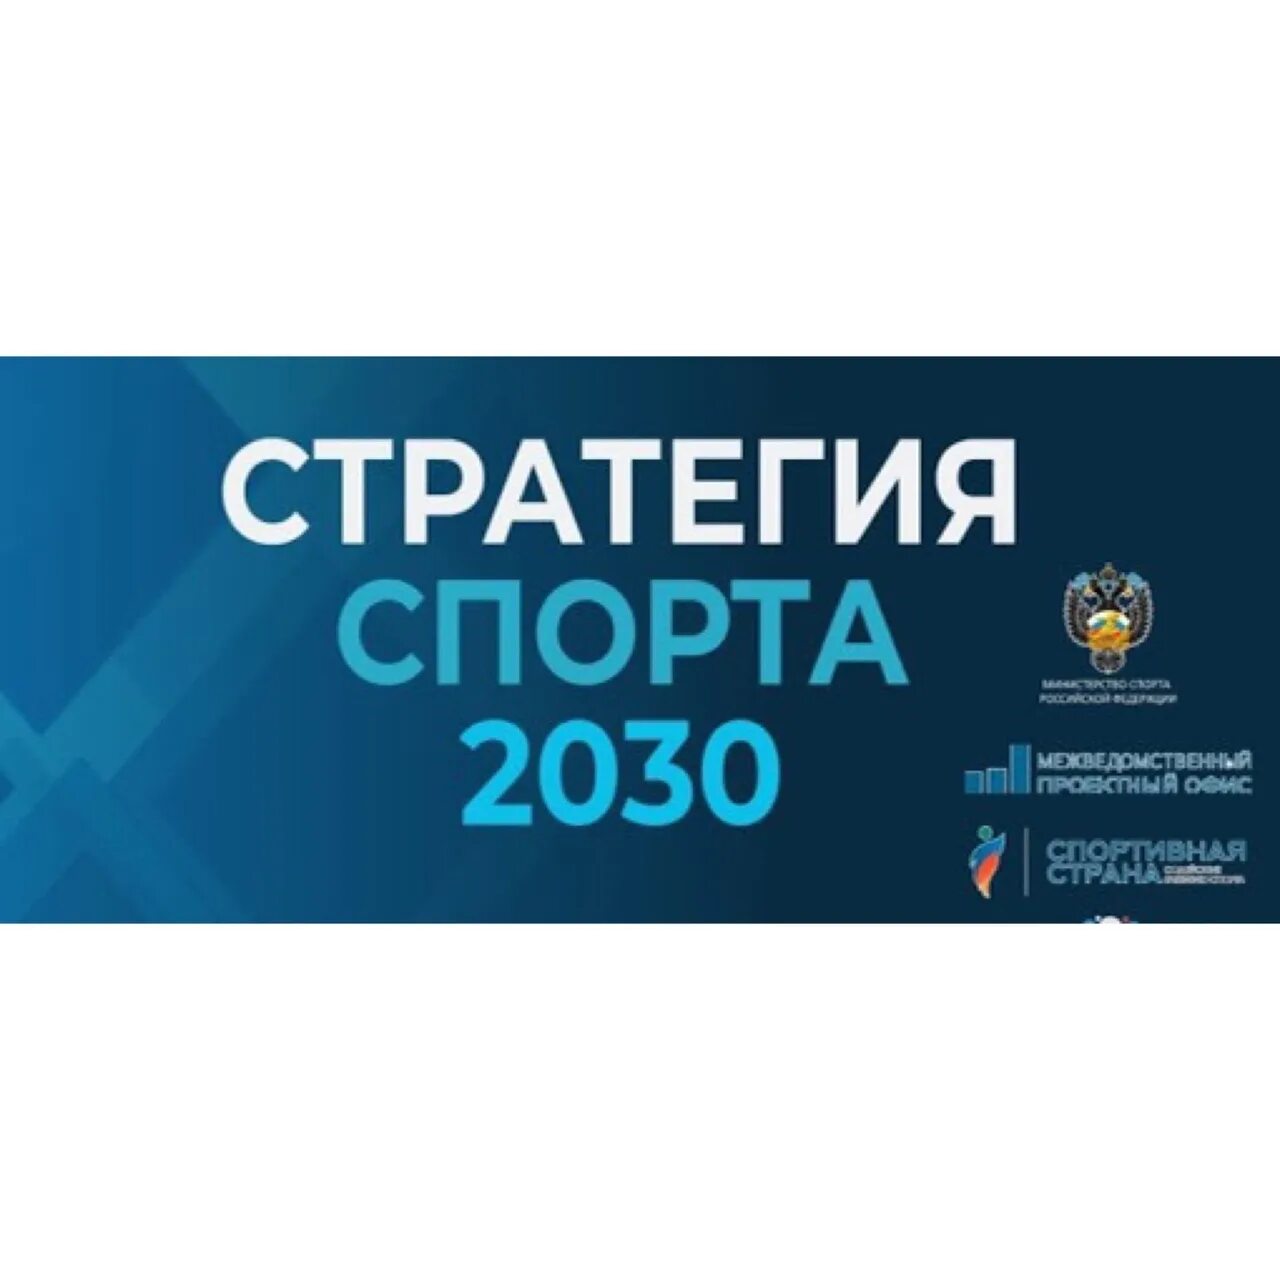 Стратегия 2030 предполагает. Стратегия развития спорта 2030. Стратегия развития физической культуры и спорта до 2030 года. Стратегия развития физкультуры и спорта до 2030 года. Стратегия развития ФКИС до 2030 года.